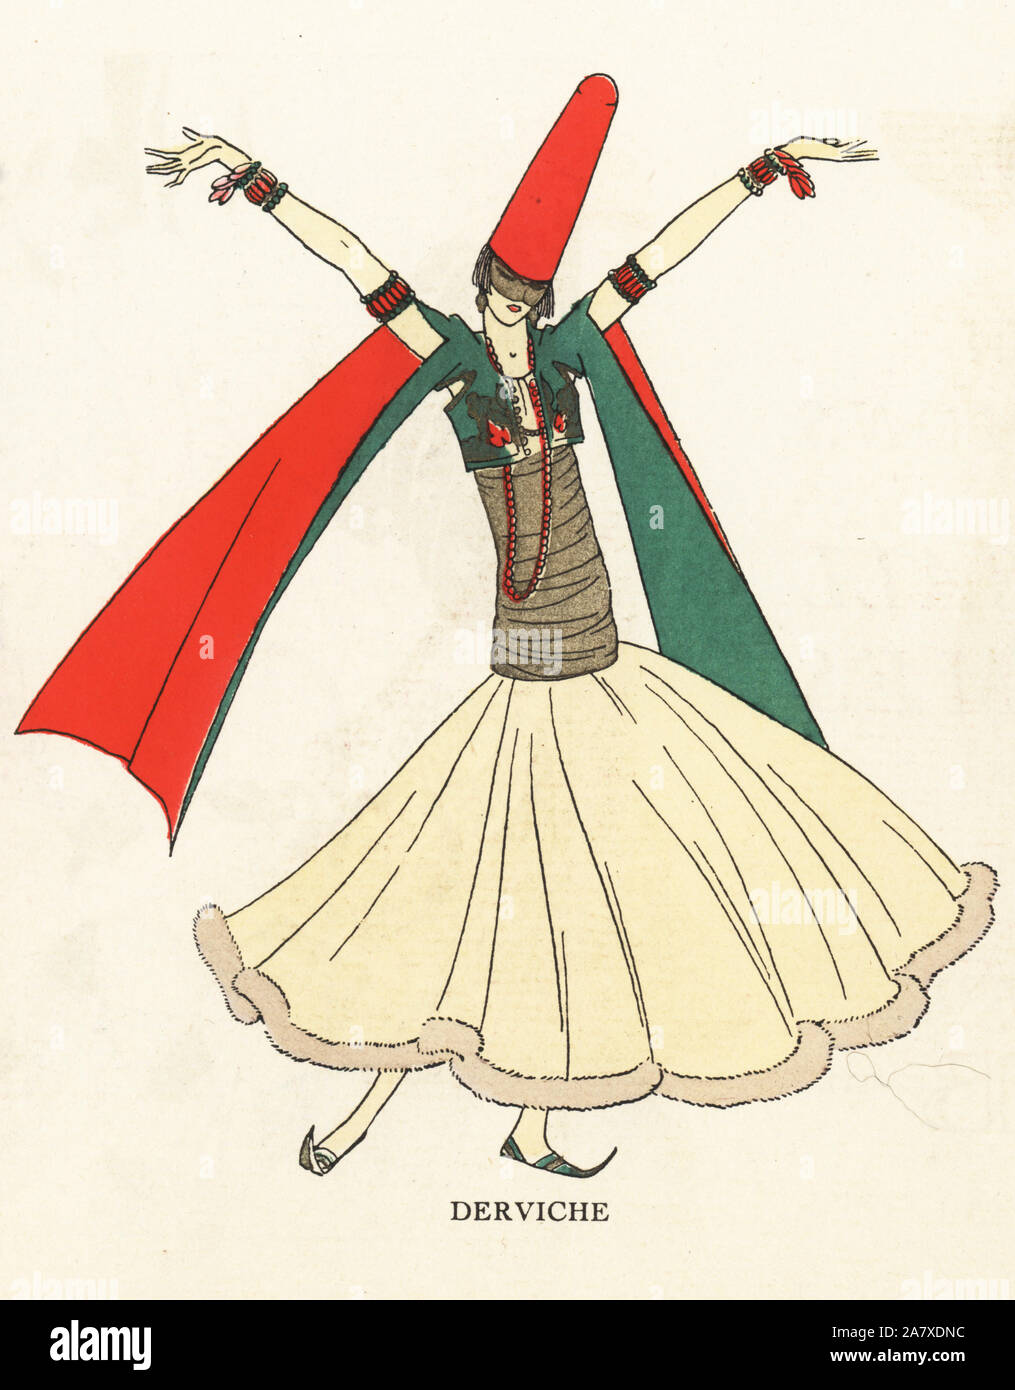 Frau in Kostüm wie ein wirbelnder Derwisch. Papierkörbe pochoir (Schablone) Lithographie von der Französischen luxus Mode Magazin Kunst, Gicht, Beauté, 1925. Stockfoto